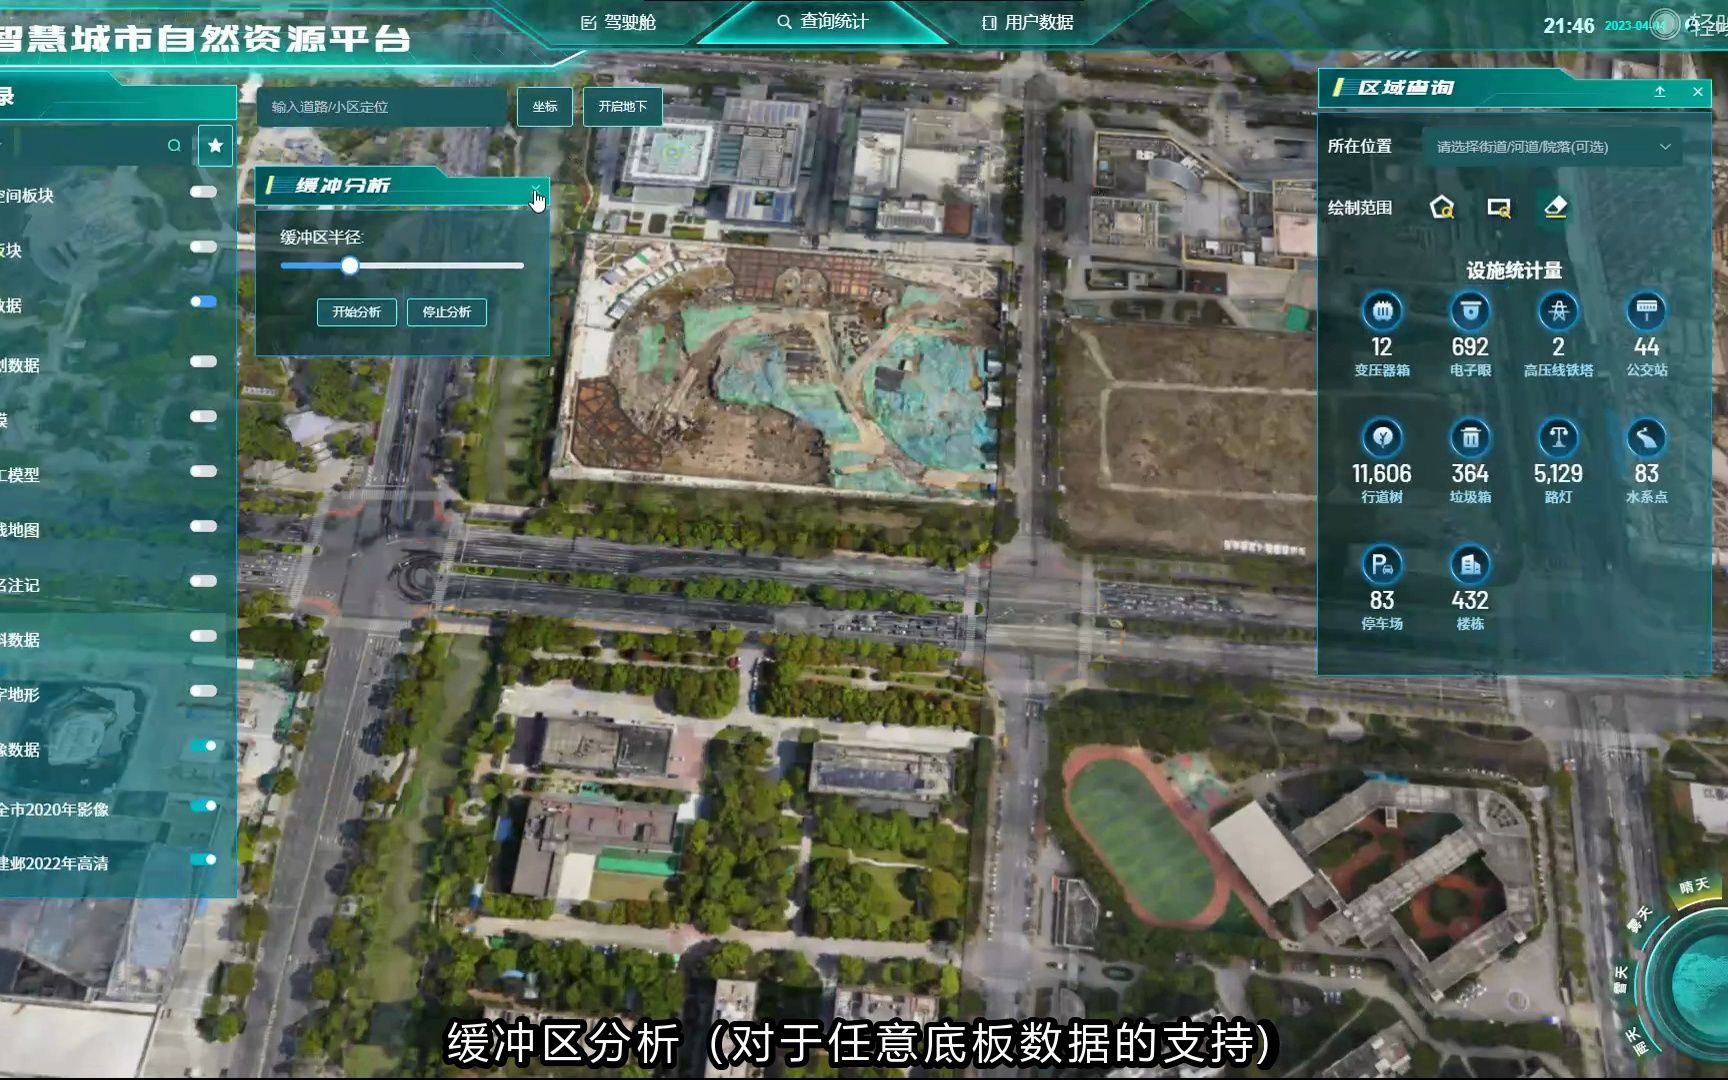 广州建通测绘地理信息技术股份有限公司 - 广州大学就业网